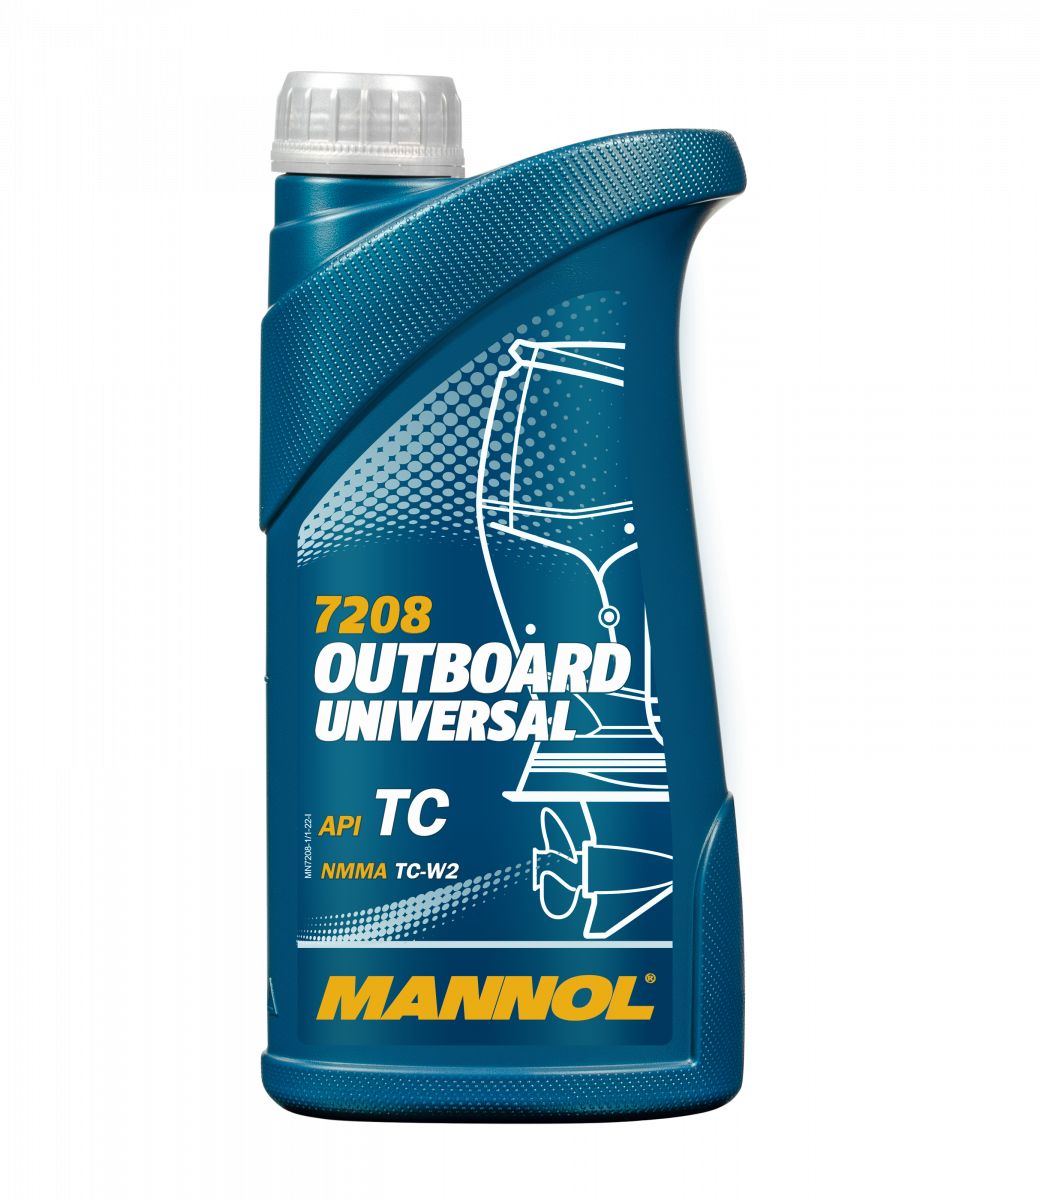 MANNOL Outboard Universal  2T  минеральное масло для лодочных моторов 1L 7208/1421